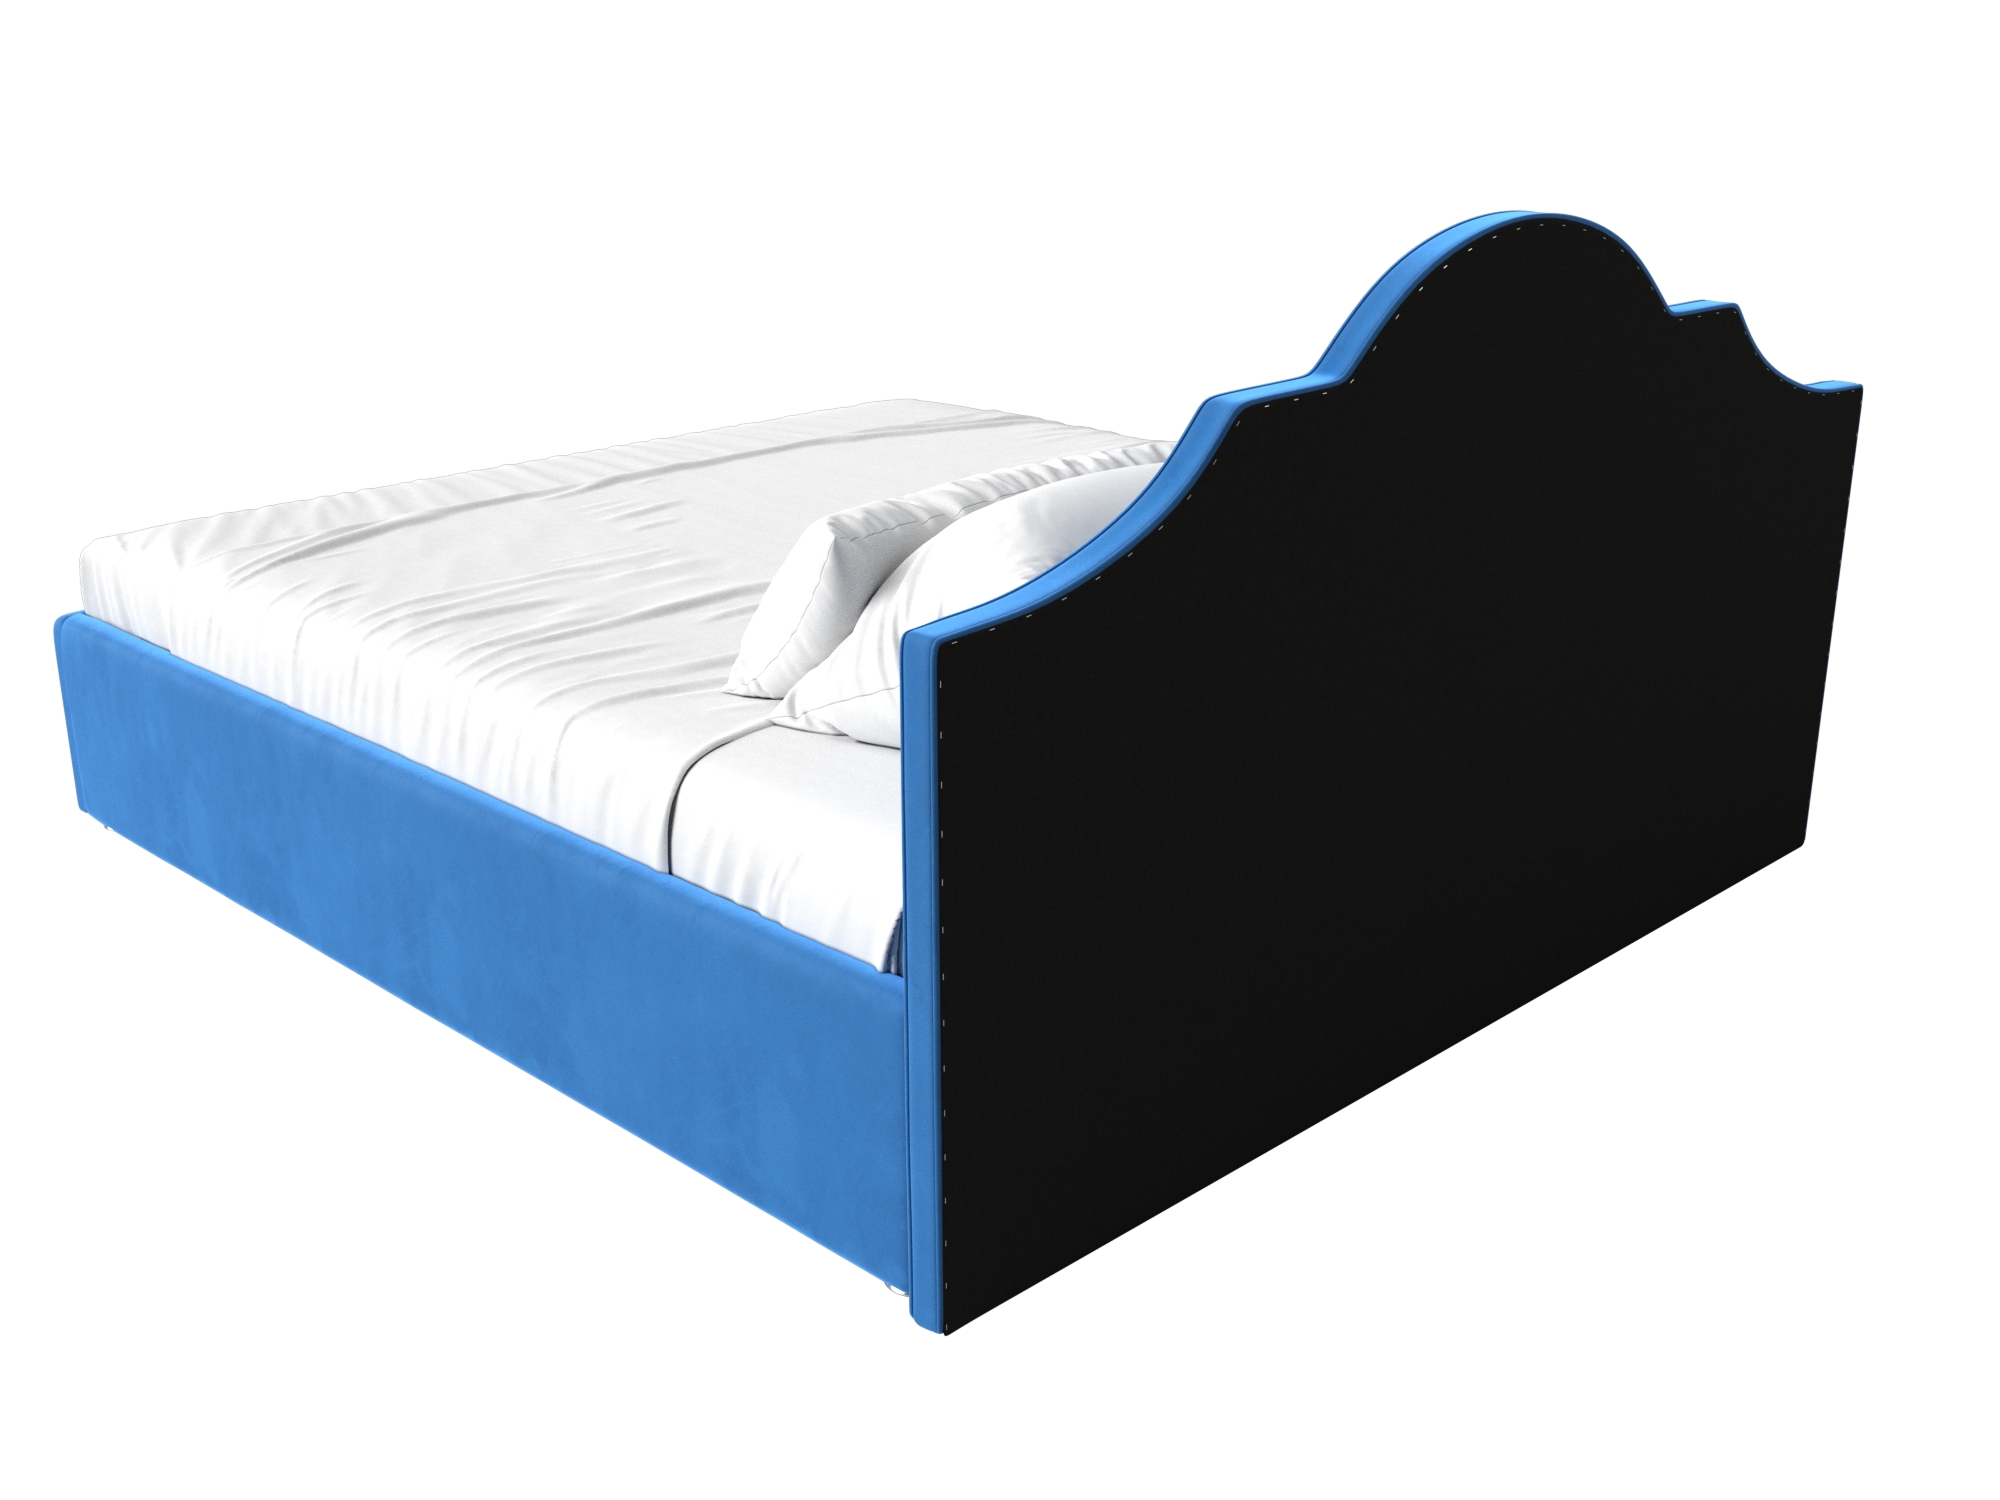 Интерьерная кровать Афина 160 (Голубой)